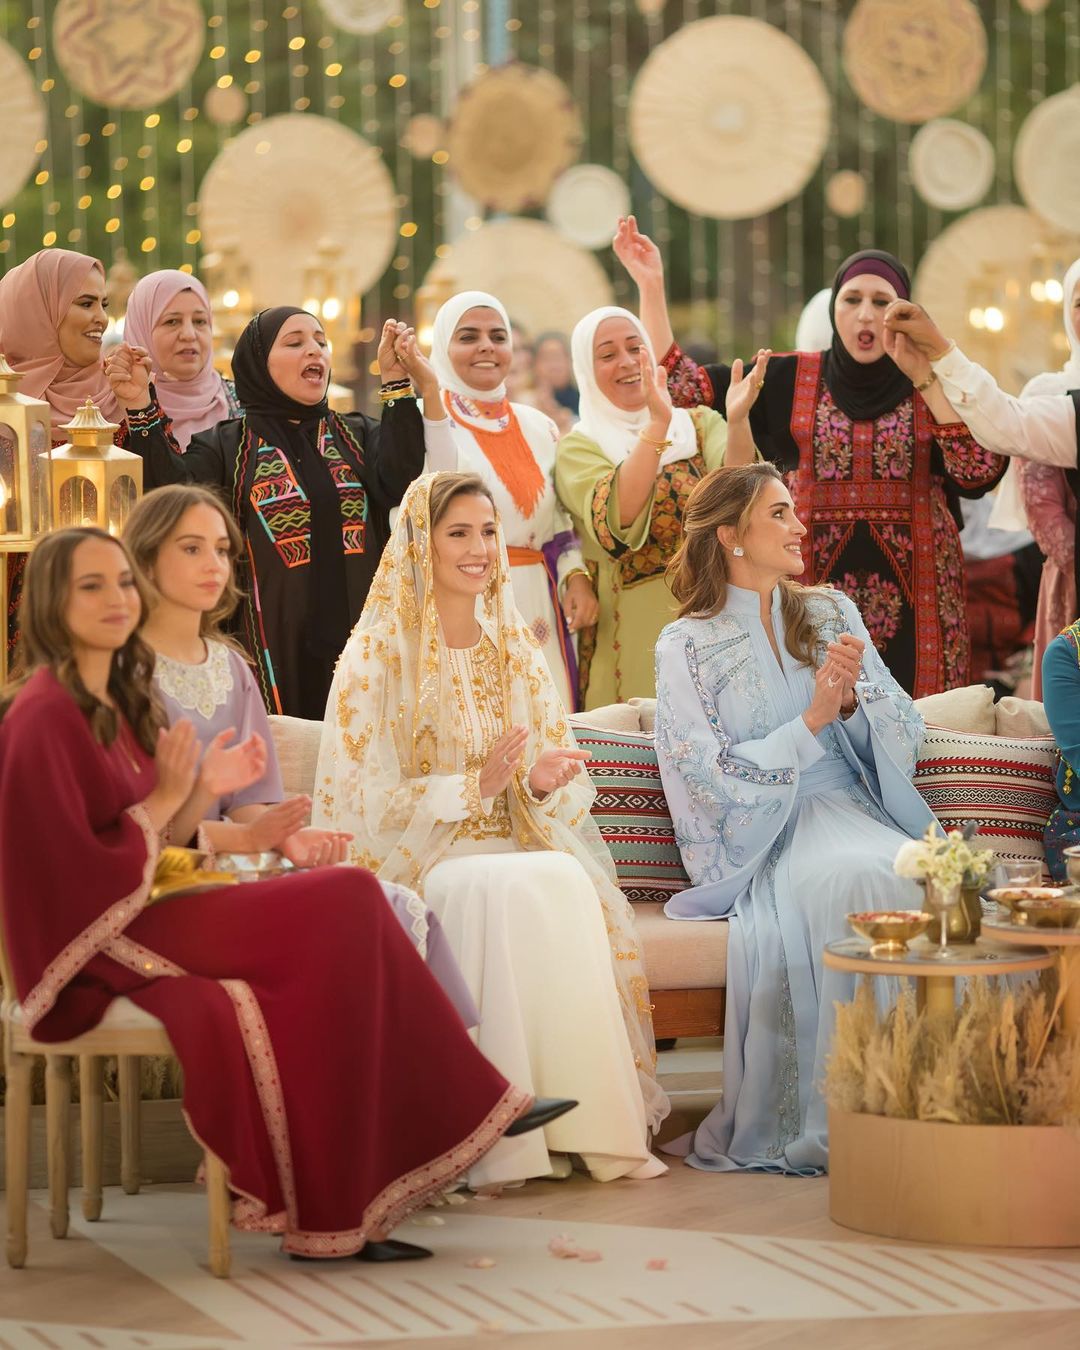  جلالة الملكة رانيا : تقيم حفل عشاء بمناسبة قرب زفاف صاحب السمو الملكي الأمير الحسين بن عبدالله الثاني، ولي العهد، والآنسة رجوة السيف